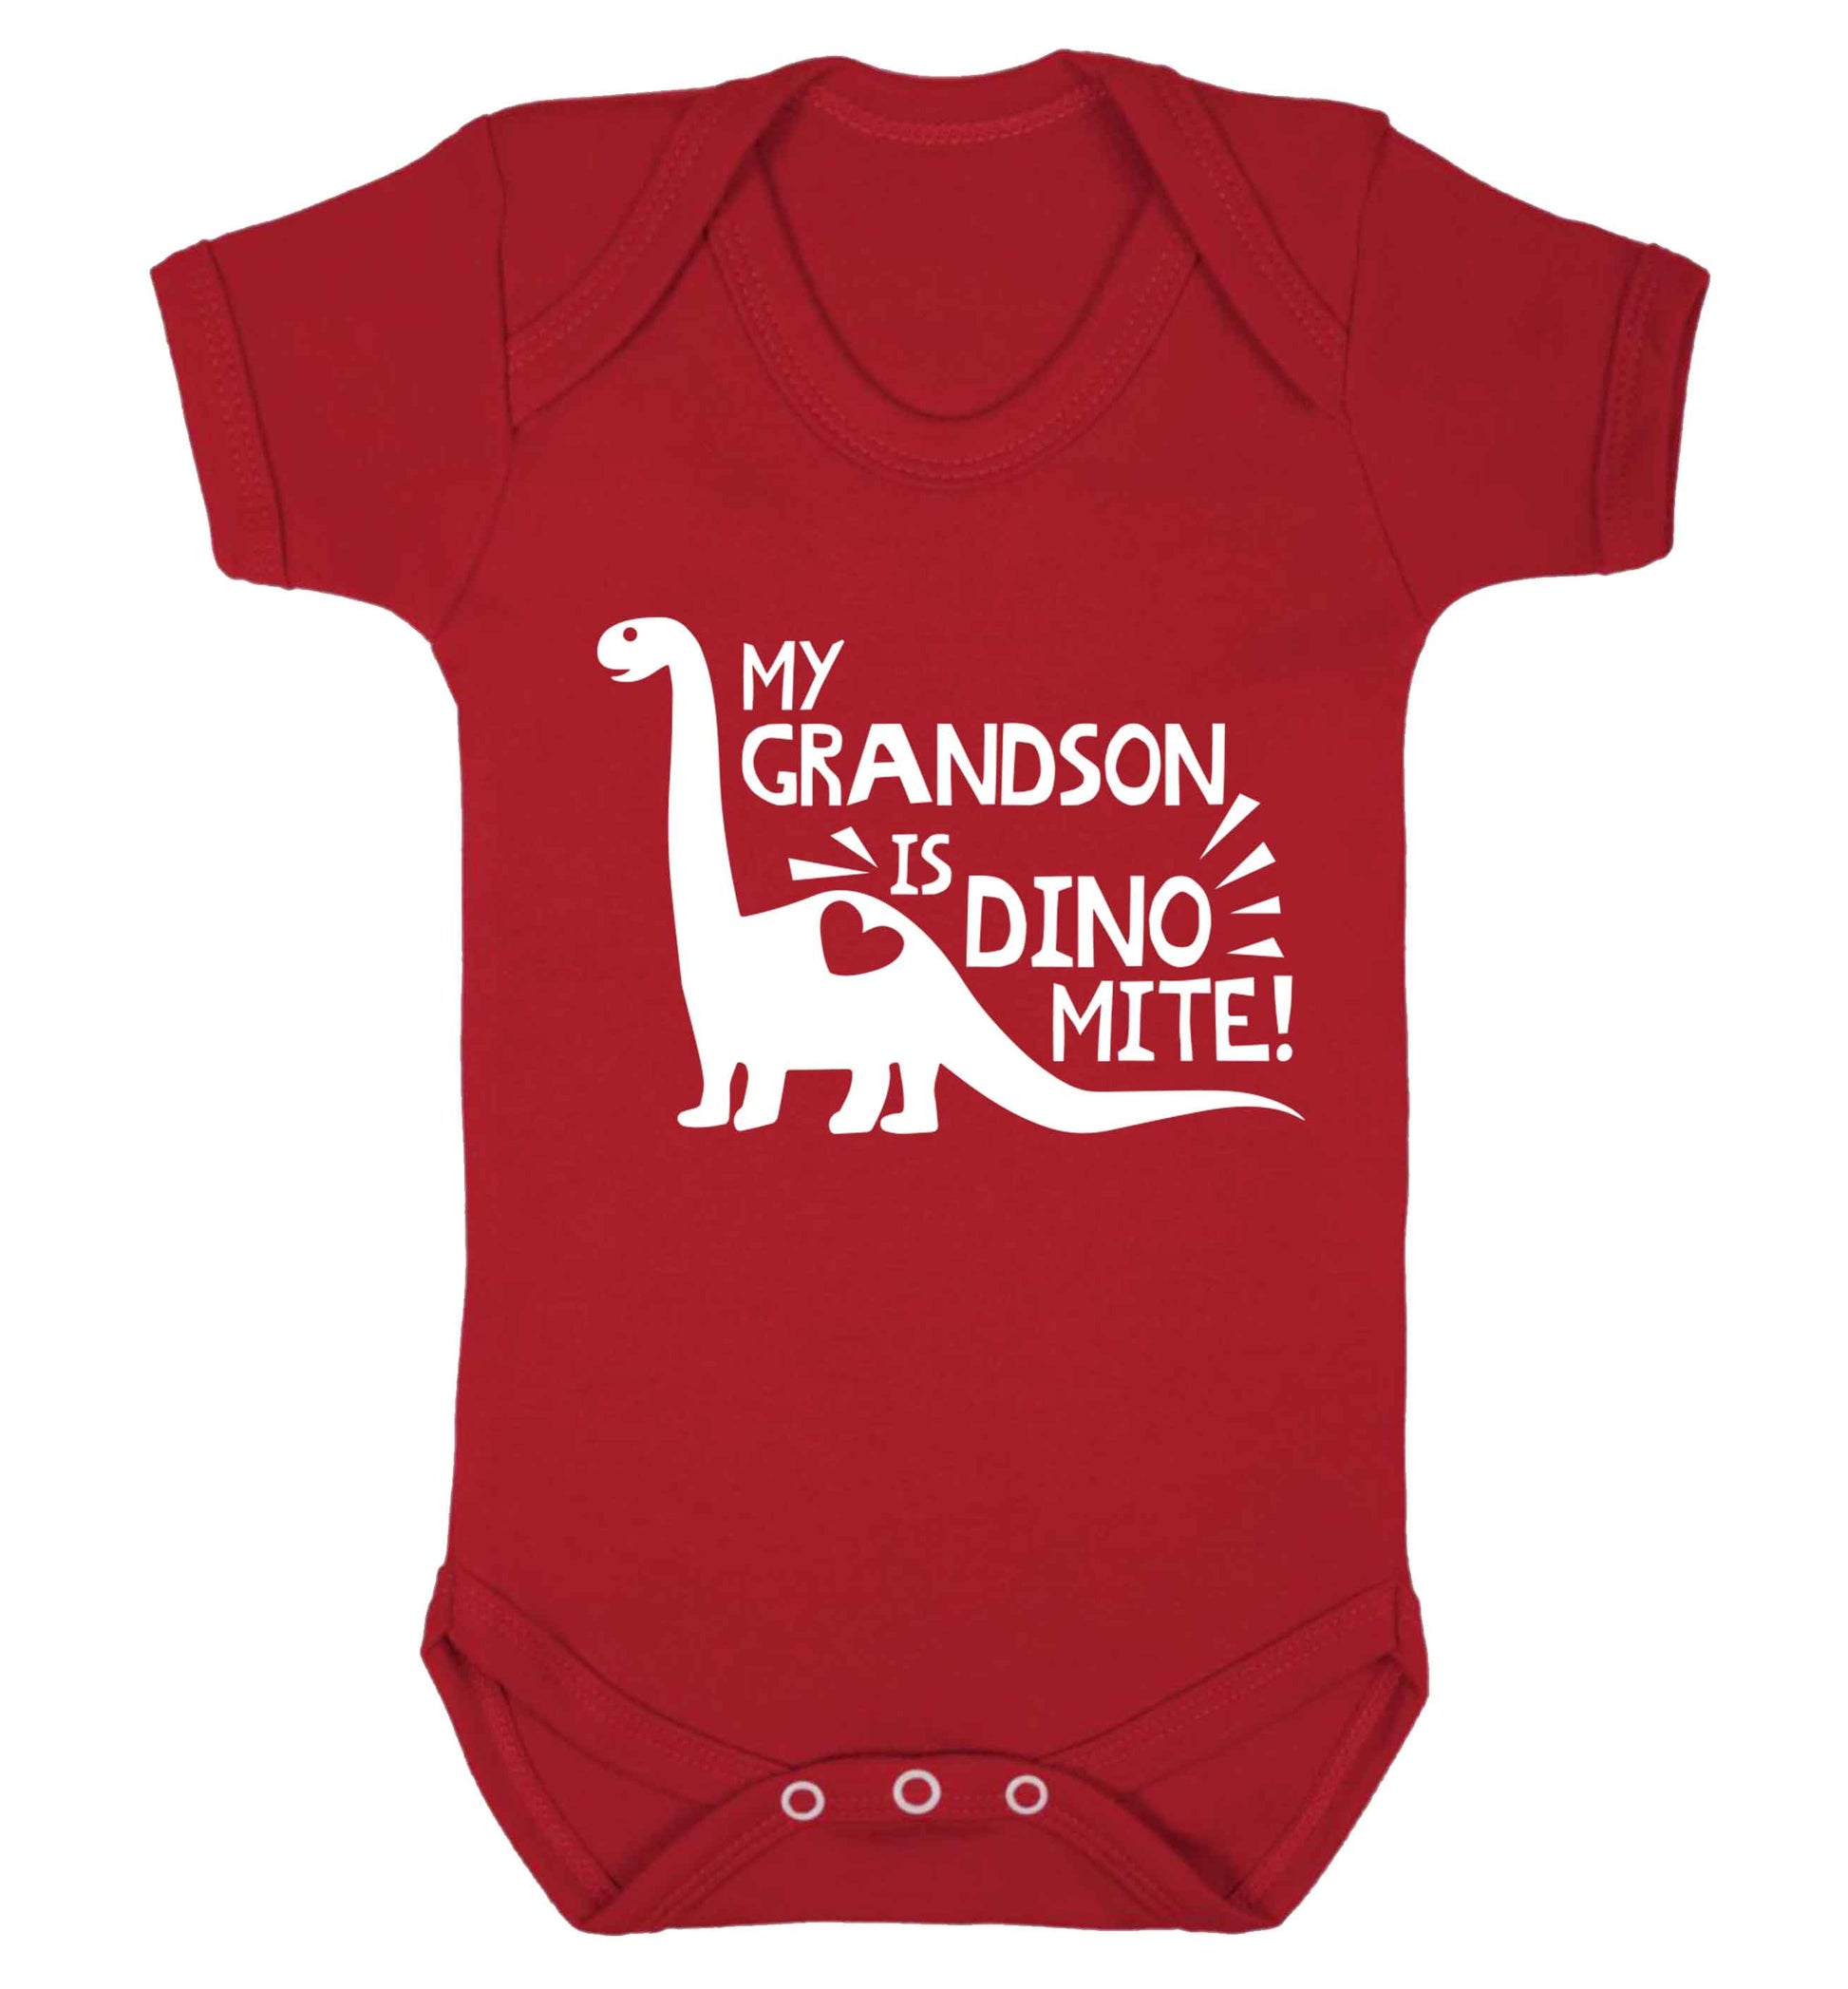 My grandson is dinomite! Baby Vest red 18-24 months